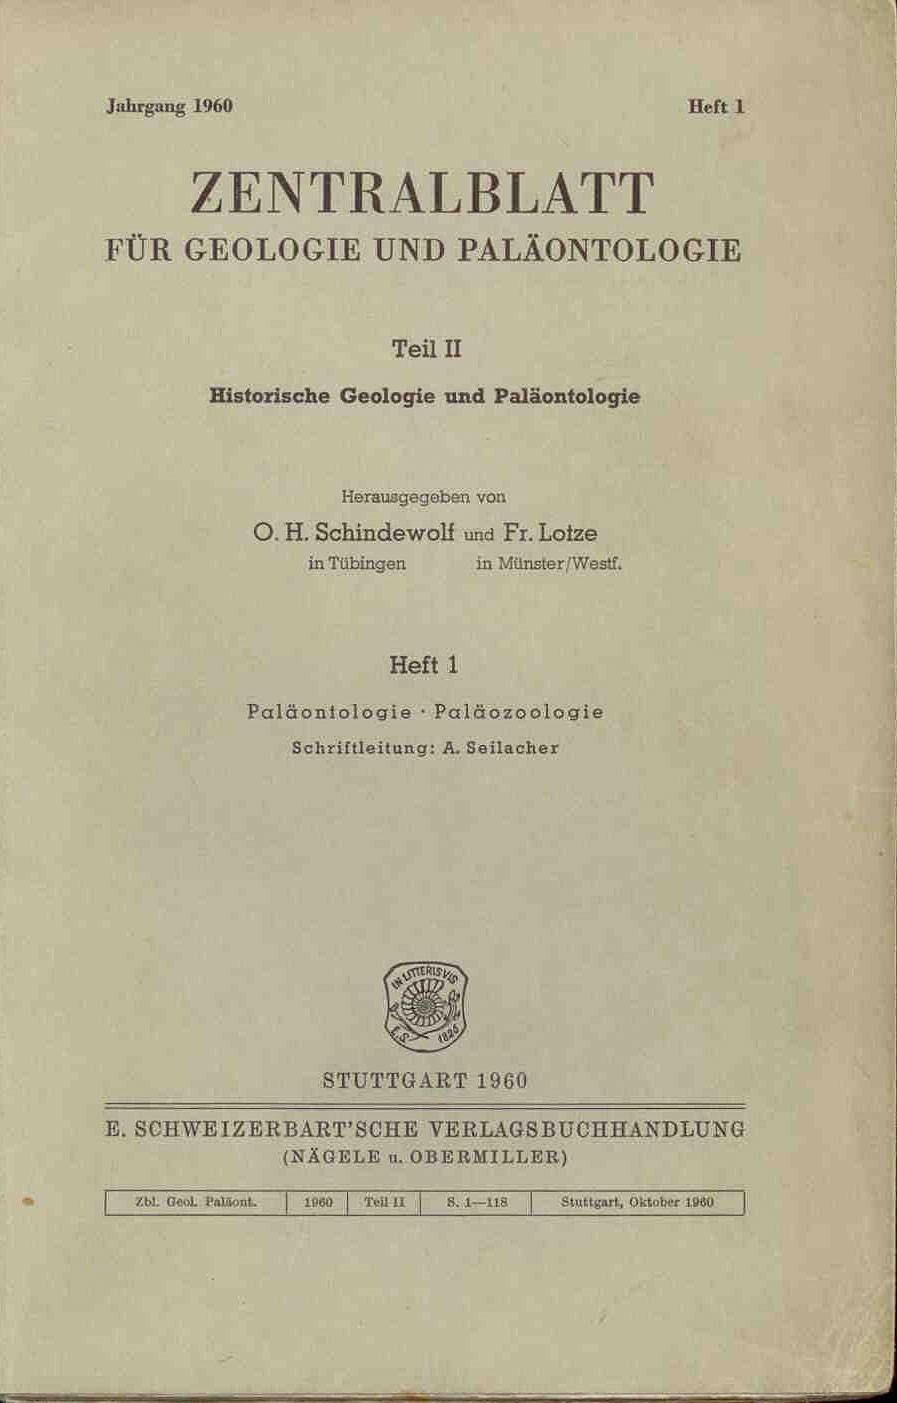 Schindewolf O. H., Lotze Fr.: Zentralblatt für Geologie und Paläontologie. Heft 1,3,4